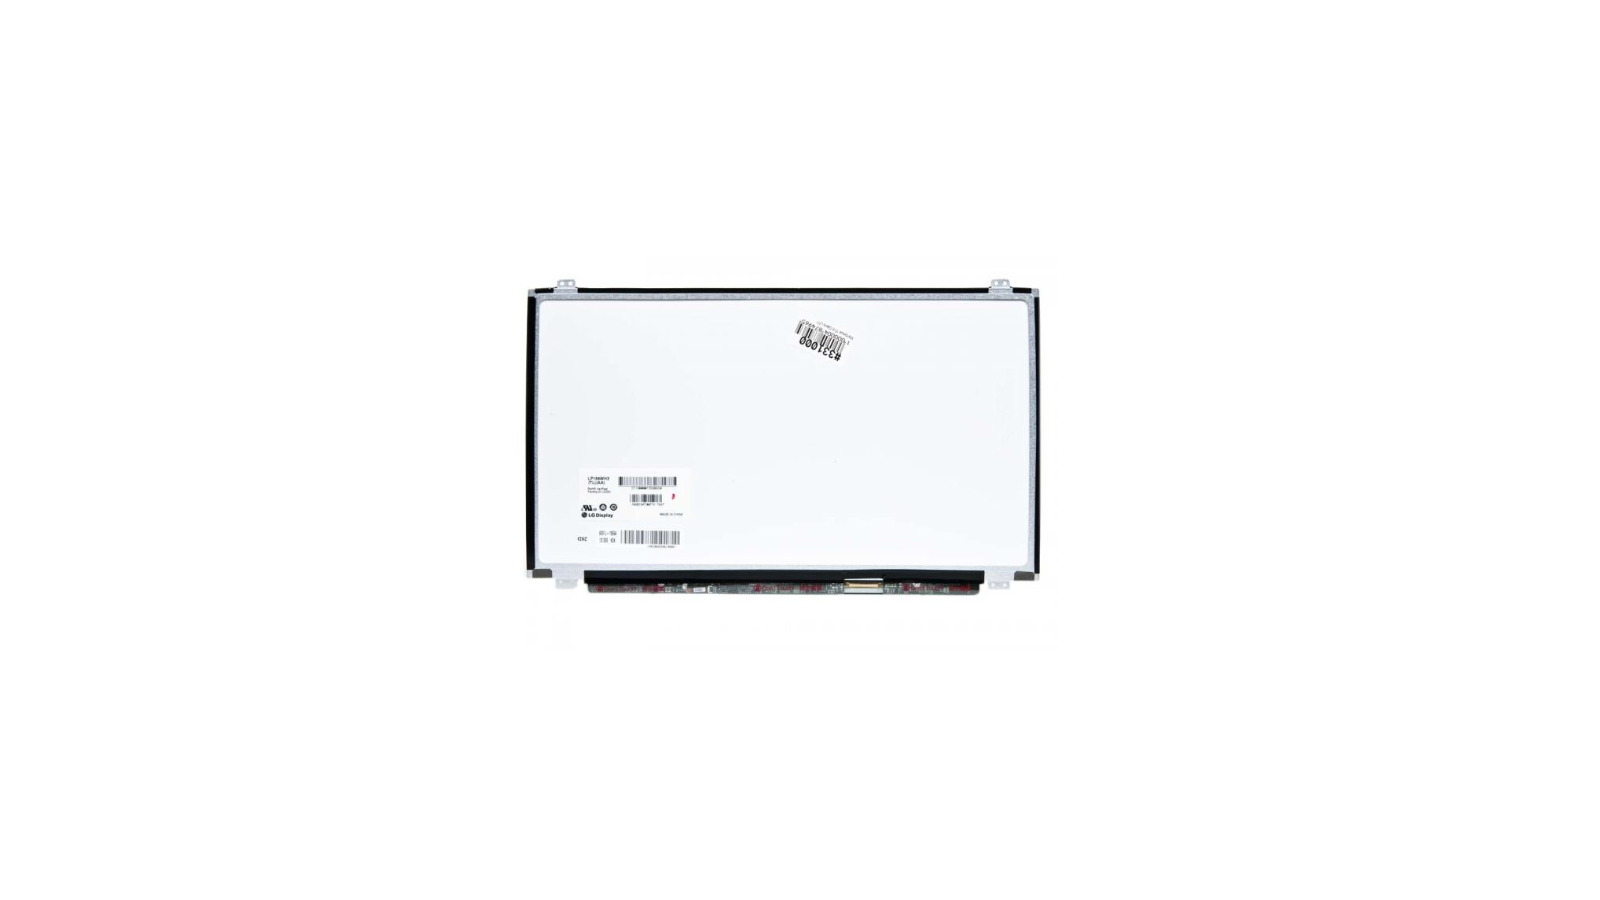 Display LCD Schermo 15,6 LED compatibile con Toshiba SATELLITE L50D-B